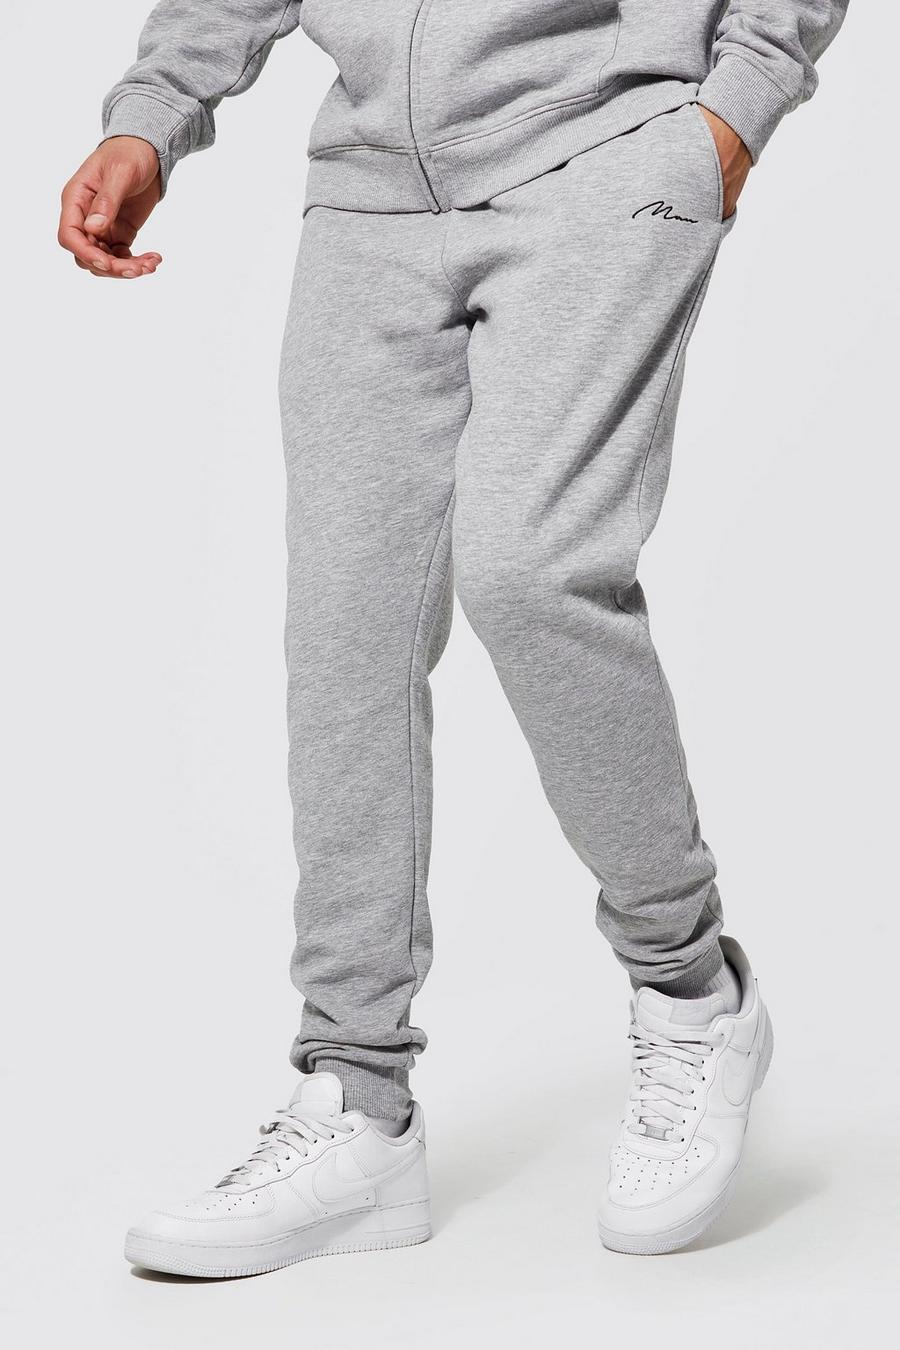 סלע אפור grey מכנסי ריצה סקיני מבד משולב בכותנת REEL עם כיתוב Man, לגברים גבוהים image number 1